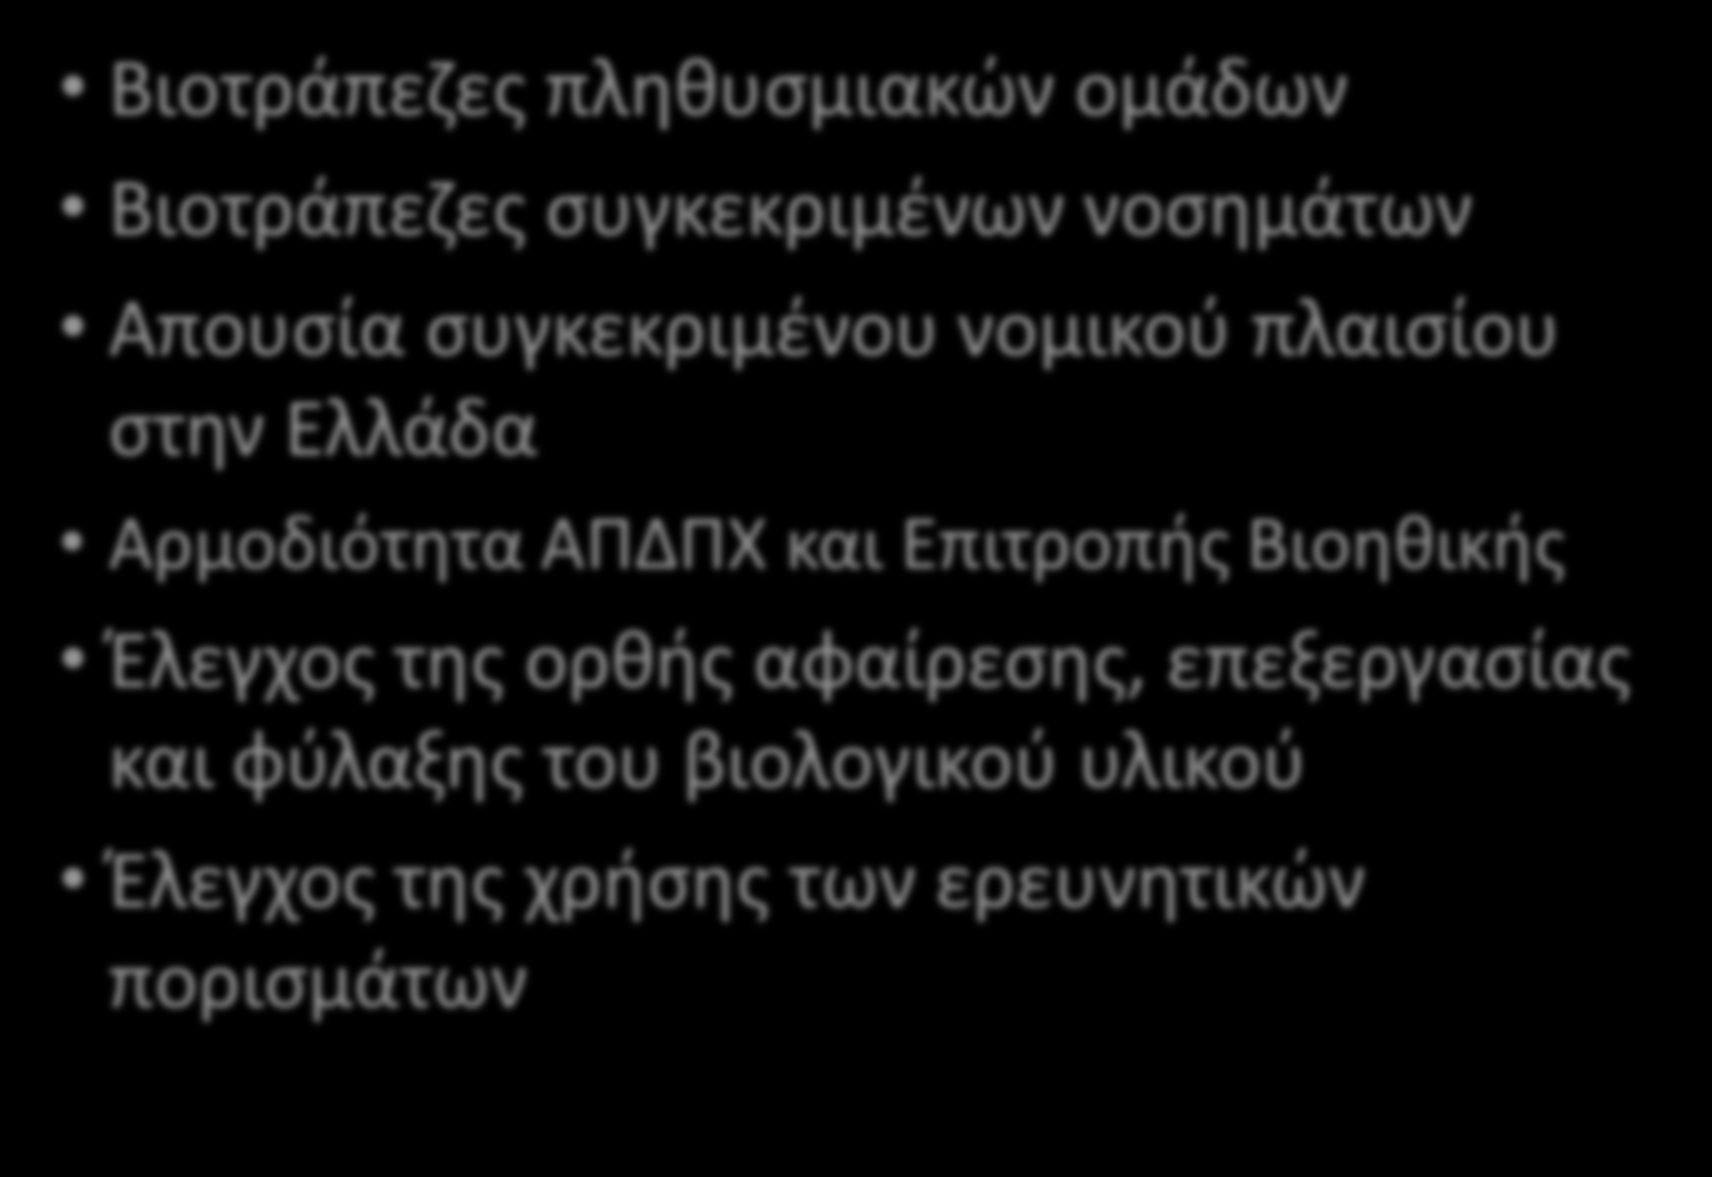 Βιοτράπεζες Βιοτράπεζες πληθυσμιακών ομάδων Βιοτράπεζες συγκεκριμένων νοσημάτων Απουσία συγκεκριμένου νομικού πλαισίου στην Ελλάδα Αρμοδιότητα